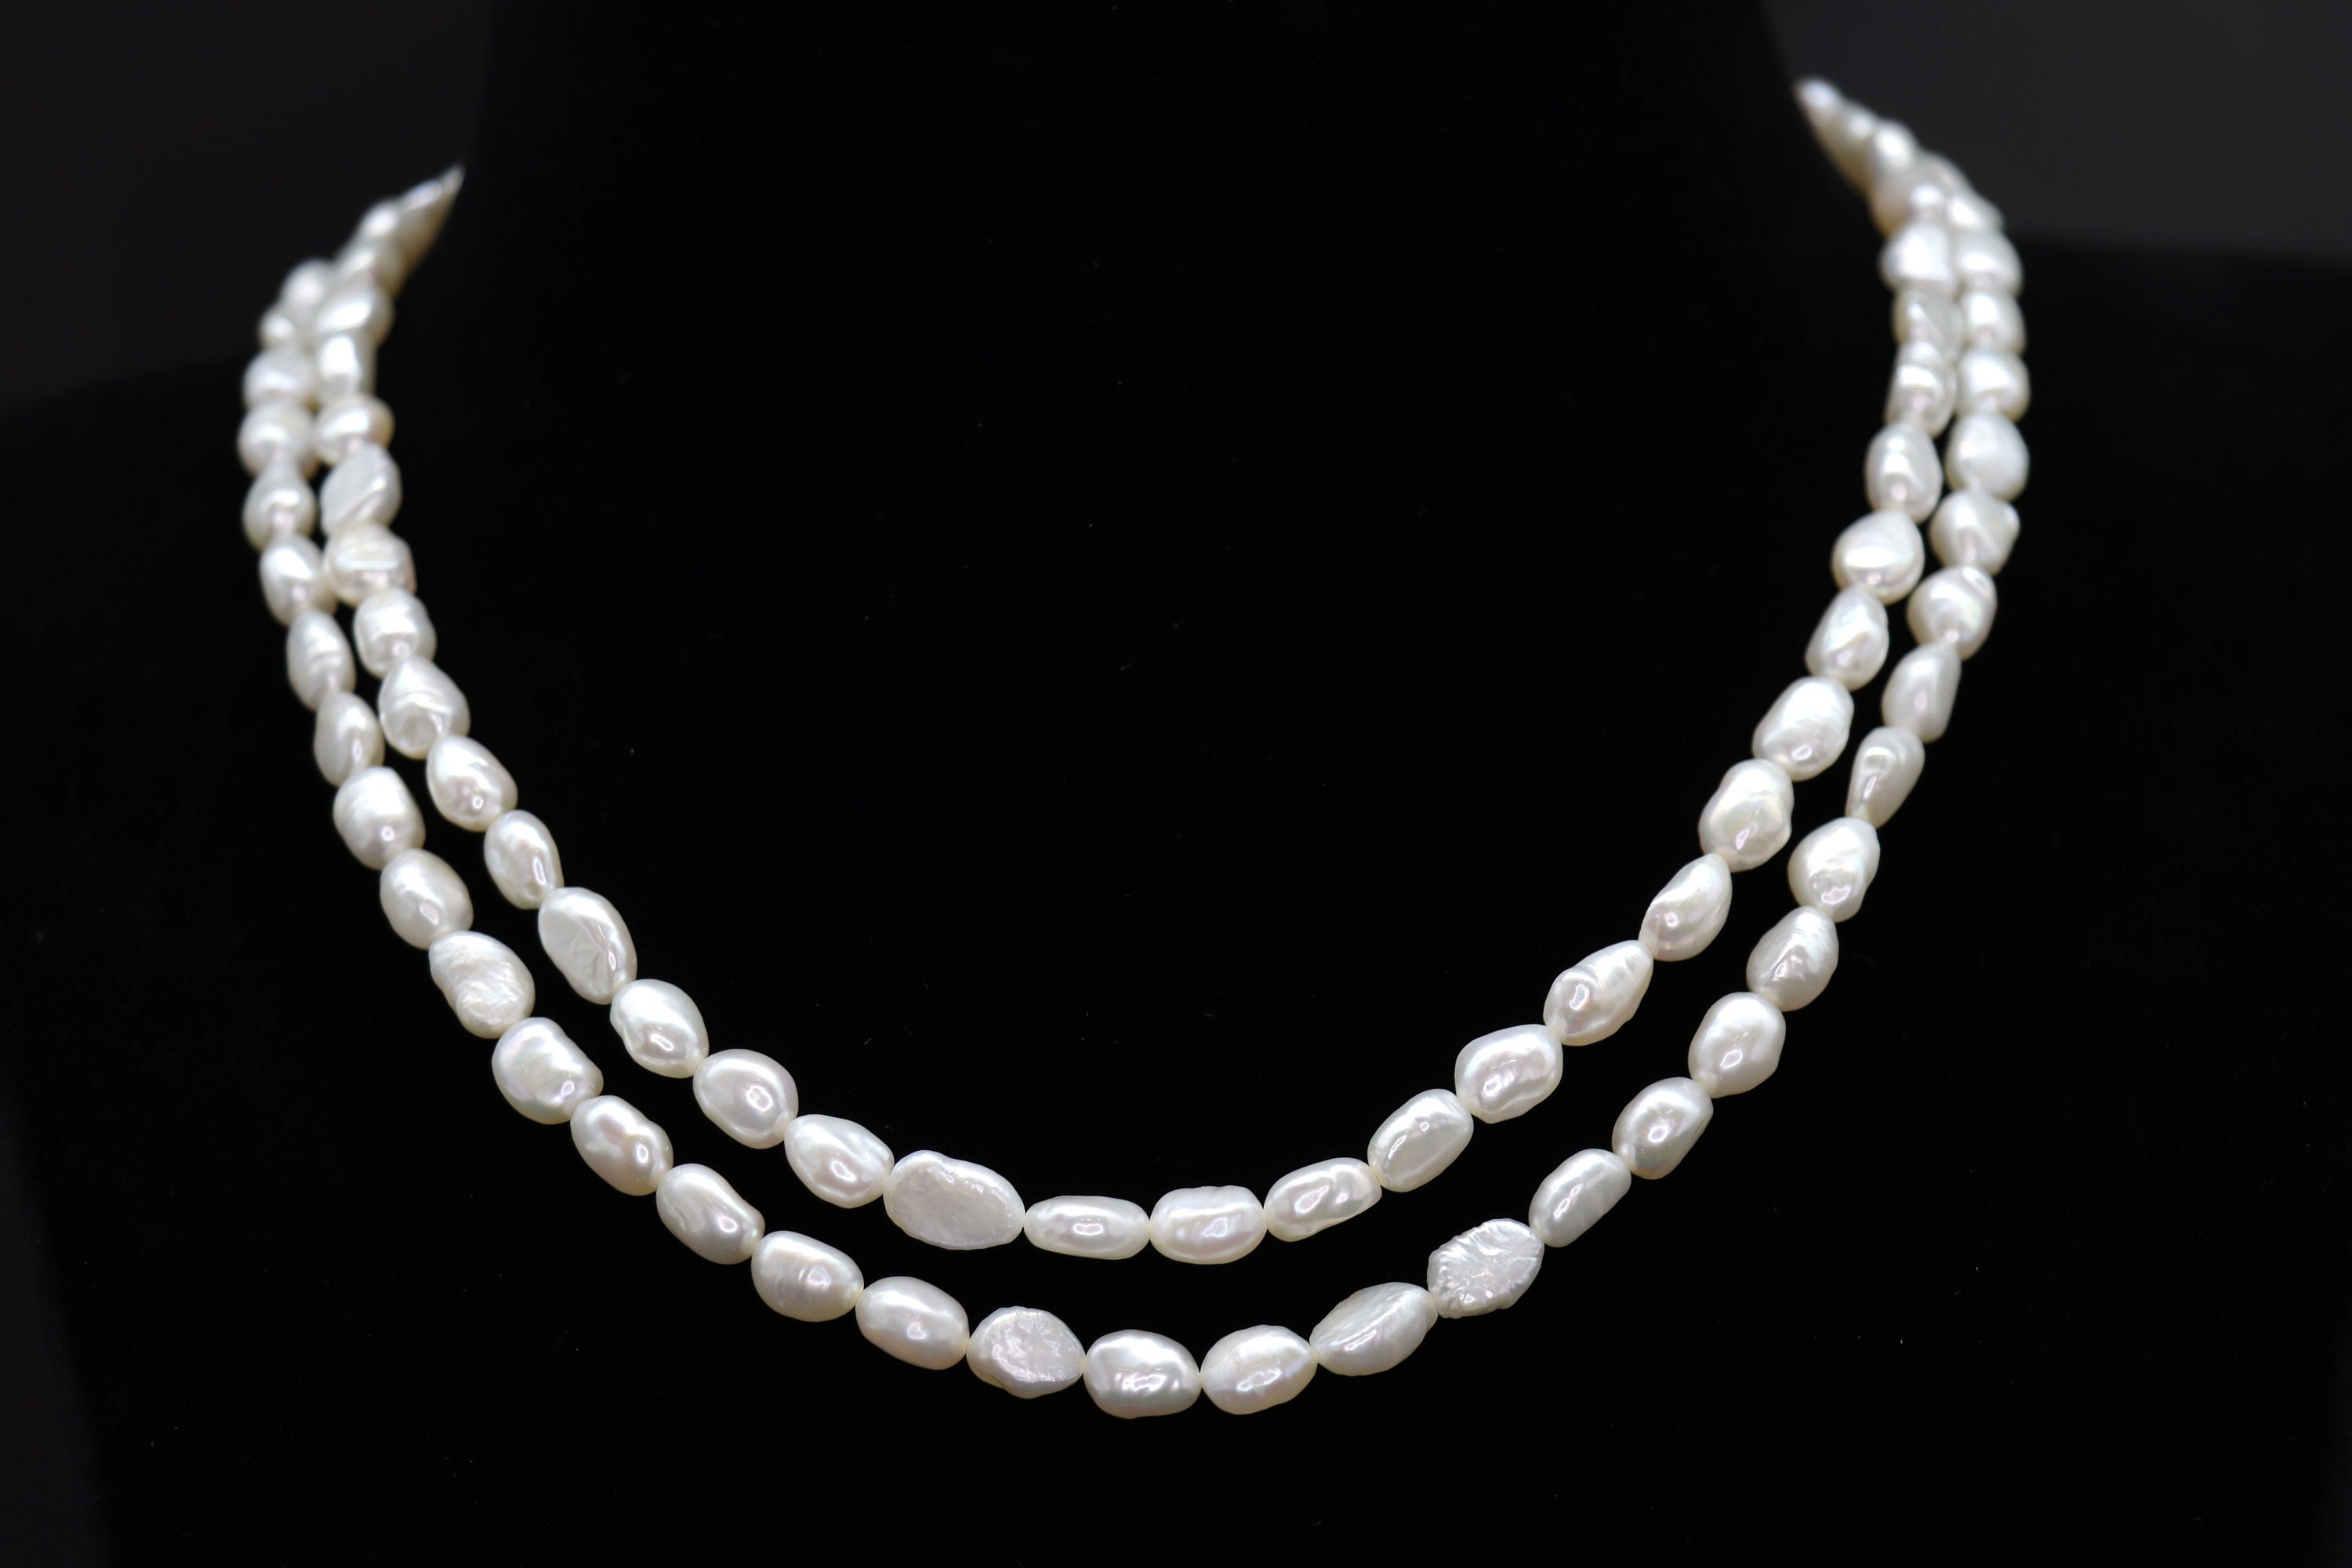 Children's Girls Faux Pearl Necklace Bracelet Earrings Jewelry Set Gift |  eBay